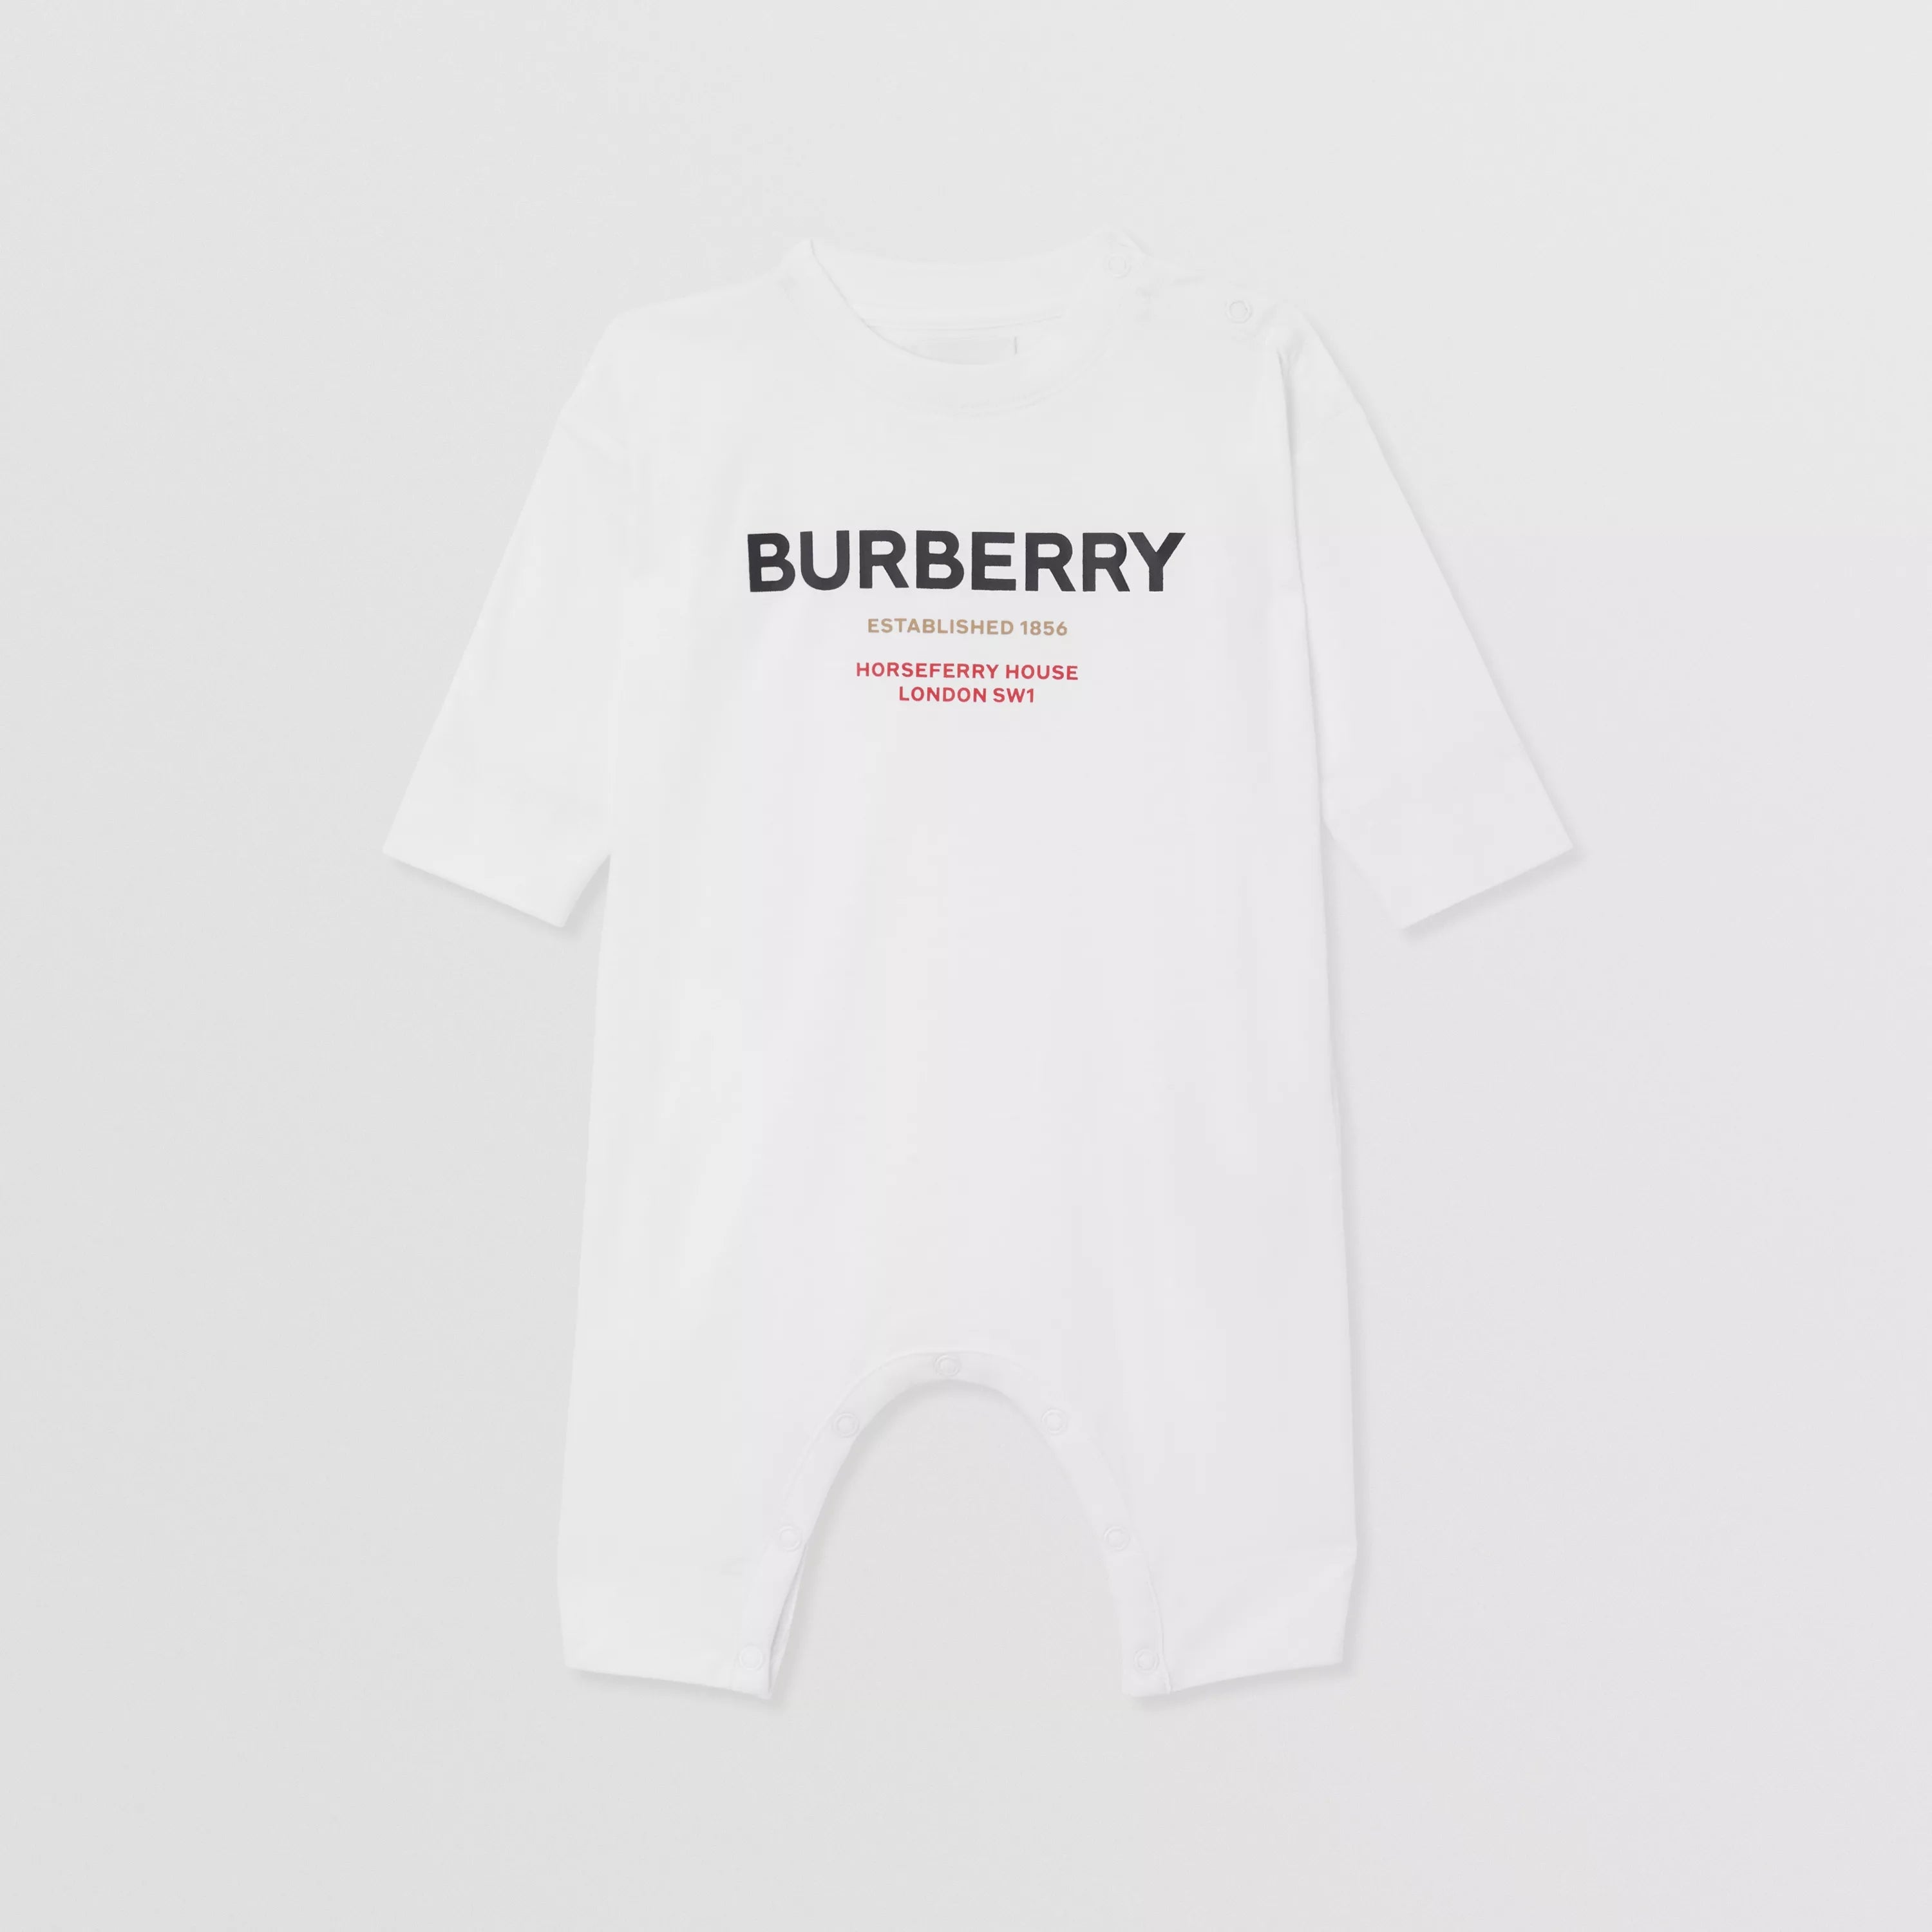 Baby Boys & Girls White Logo Cotton Babysuit